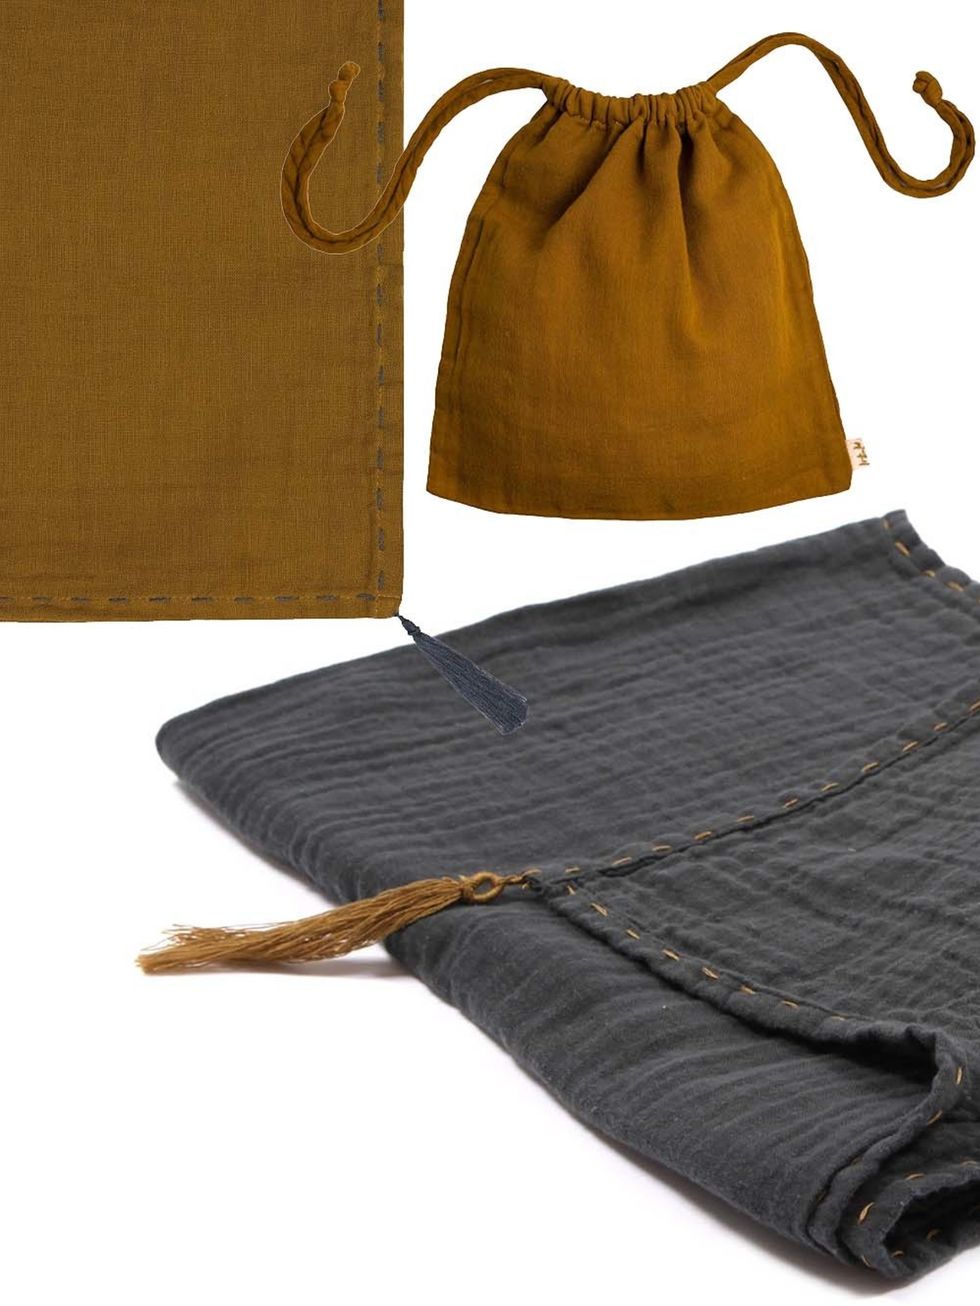 Brown, Textile, Bag, Tan, Beige, Leather, Shoulder bag, Clothes hanger, Fashion design, Thread, 